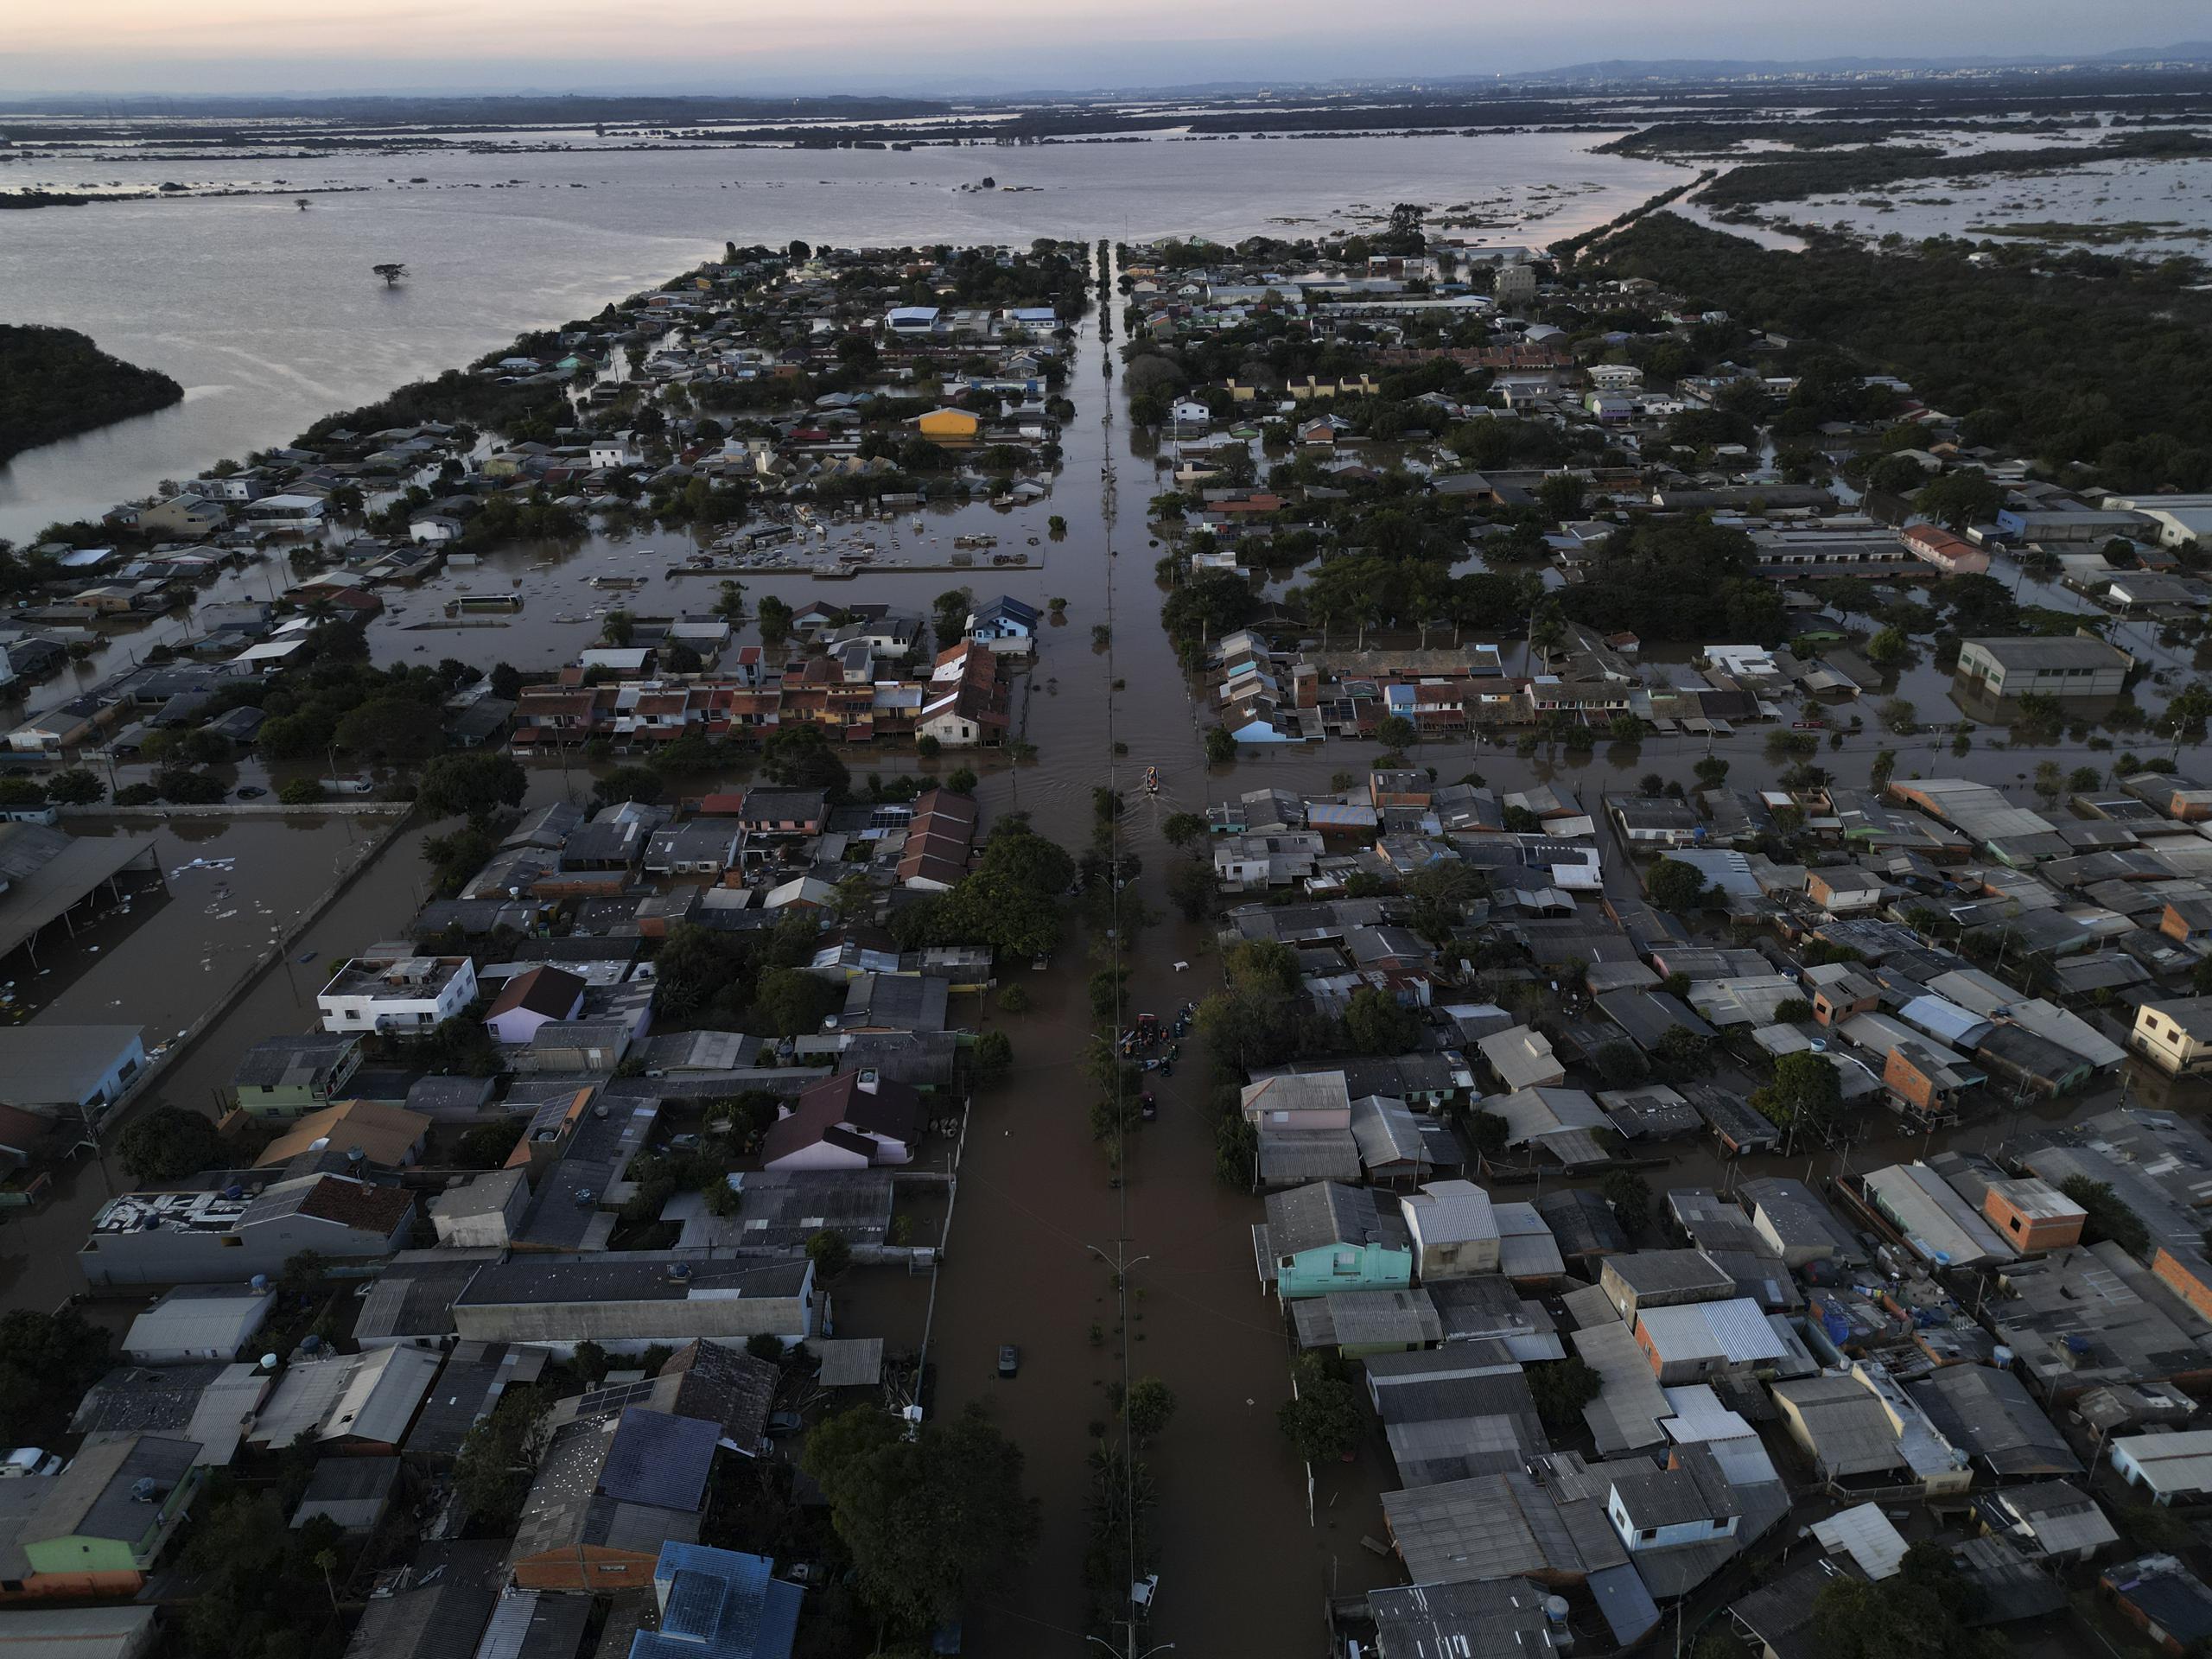 La agencia de protección civil dijo que se esperan fuertes lluvias en la mayor parte de Haití, incluida la zona afectada por el tornado, y advirtió de posibles inundaciones y corrimientos de tierra.